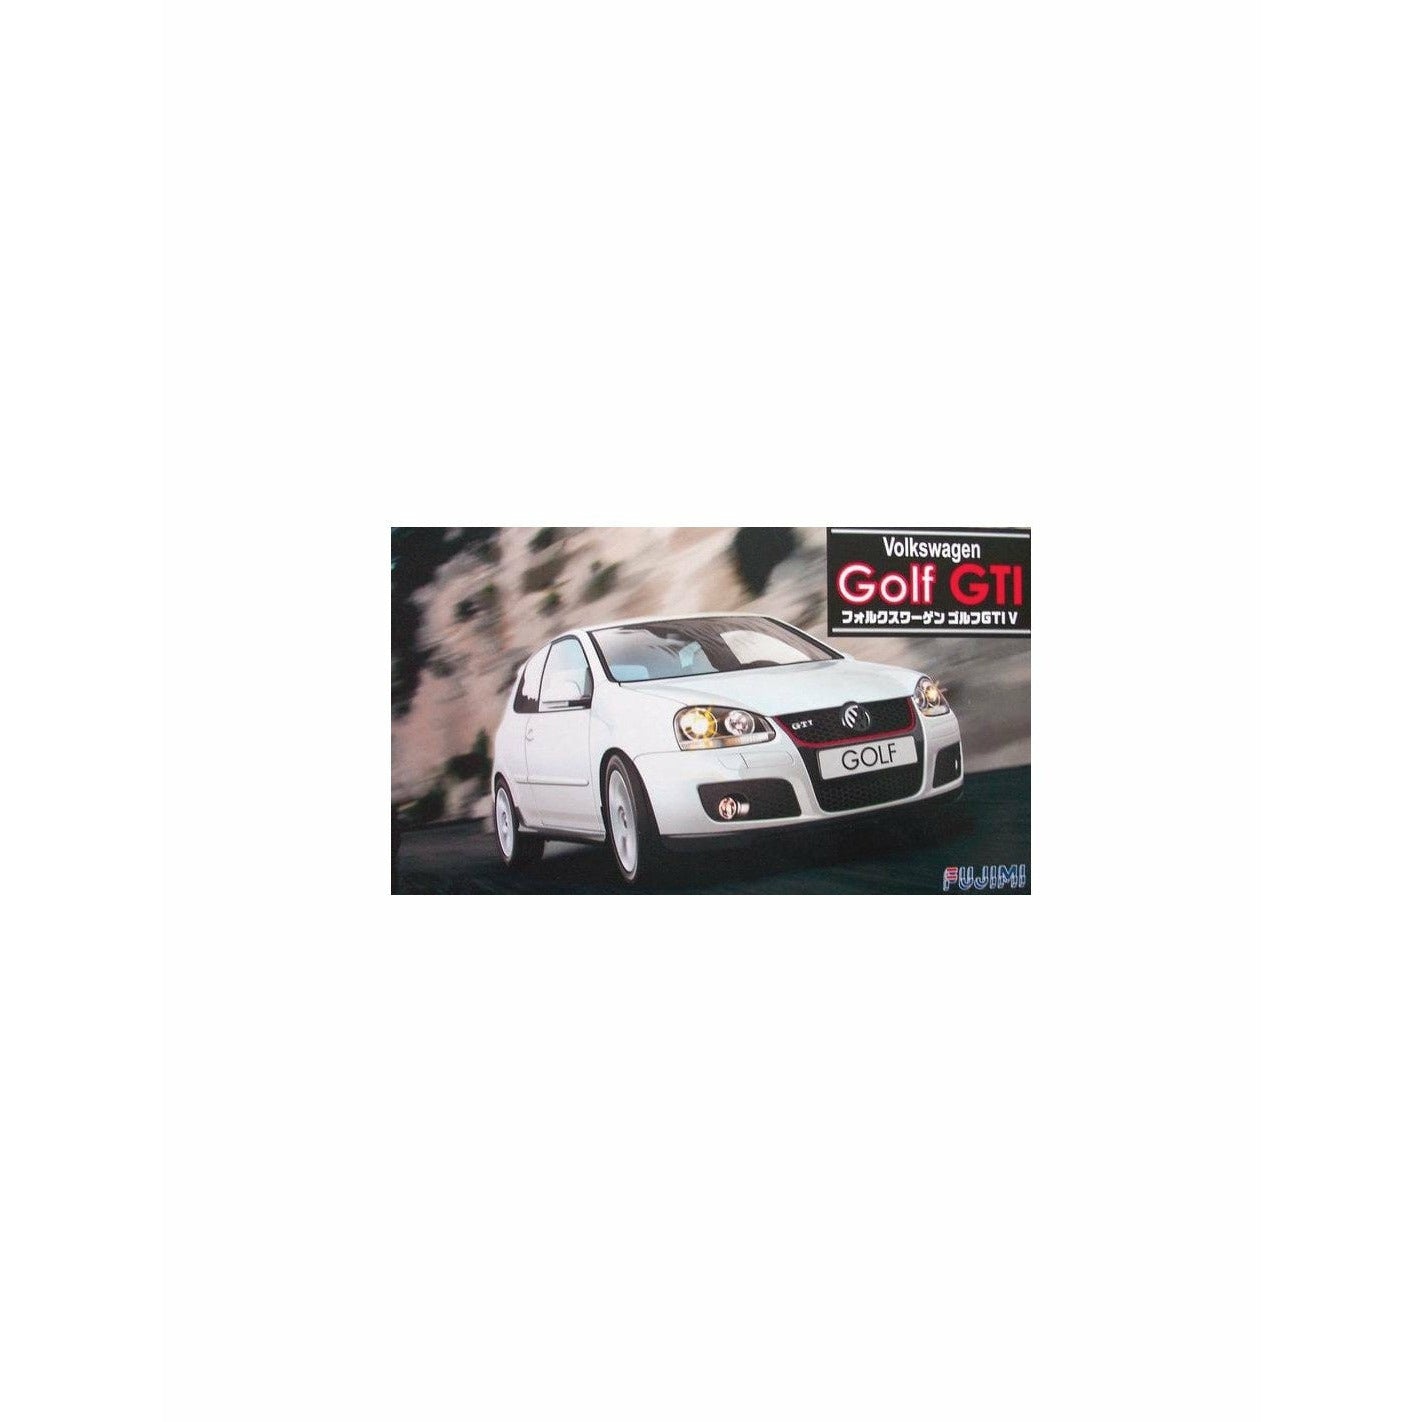 Golf GTI V 1/24 Model Car Kit #123158 by Fujimi